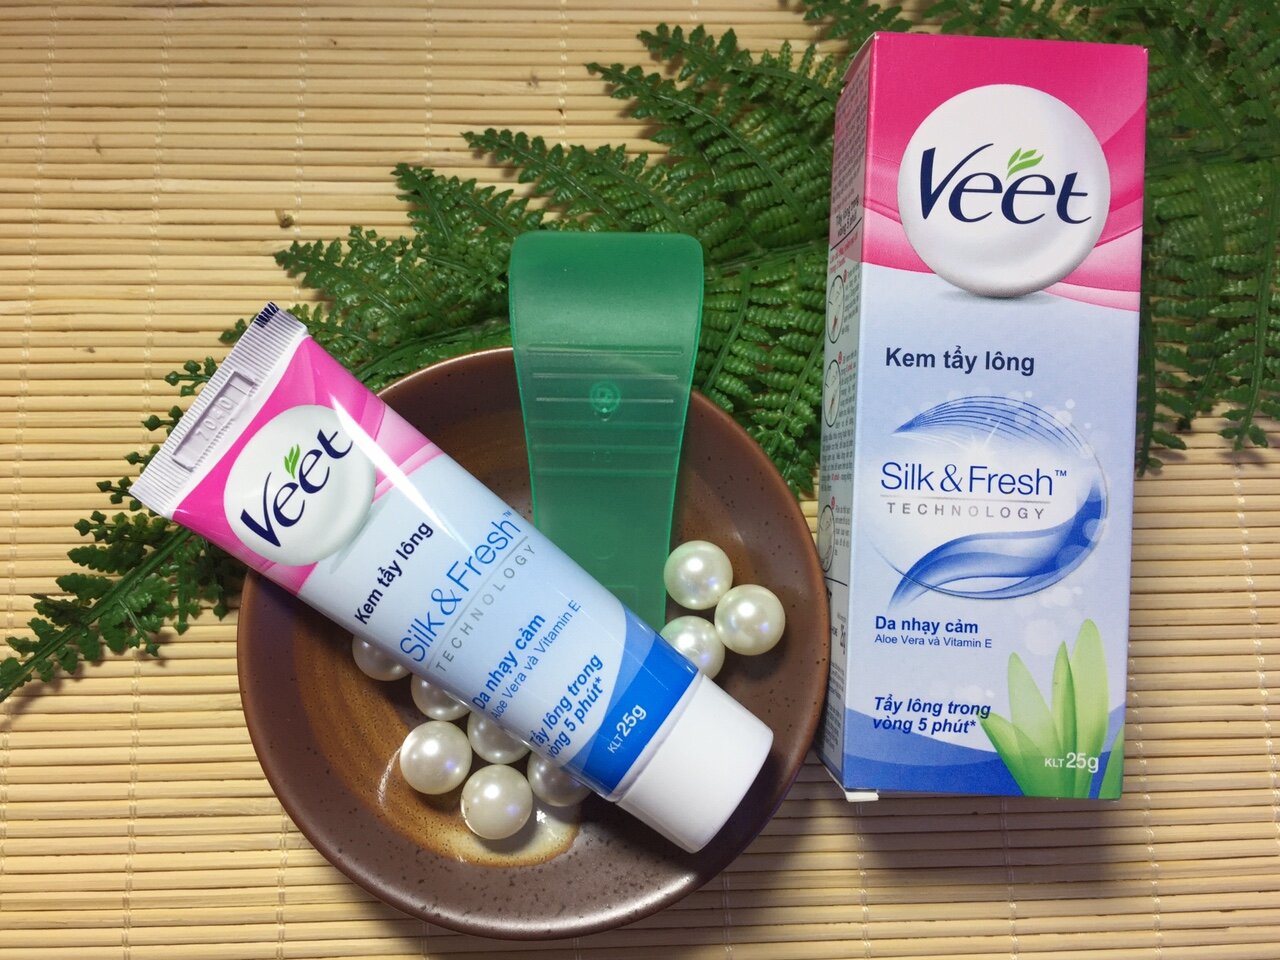 Kem tẩy lông Veet Silk & Fresh Aloe Vera được đánh giá là tốt nhất thị trường với công thức ngậm nước giúp làn da mềm mại